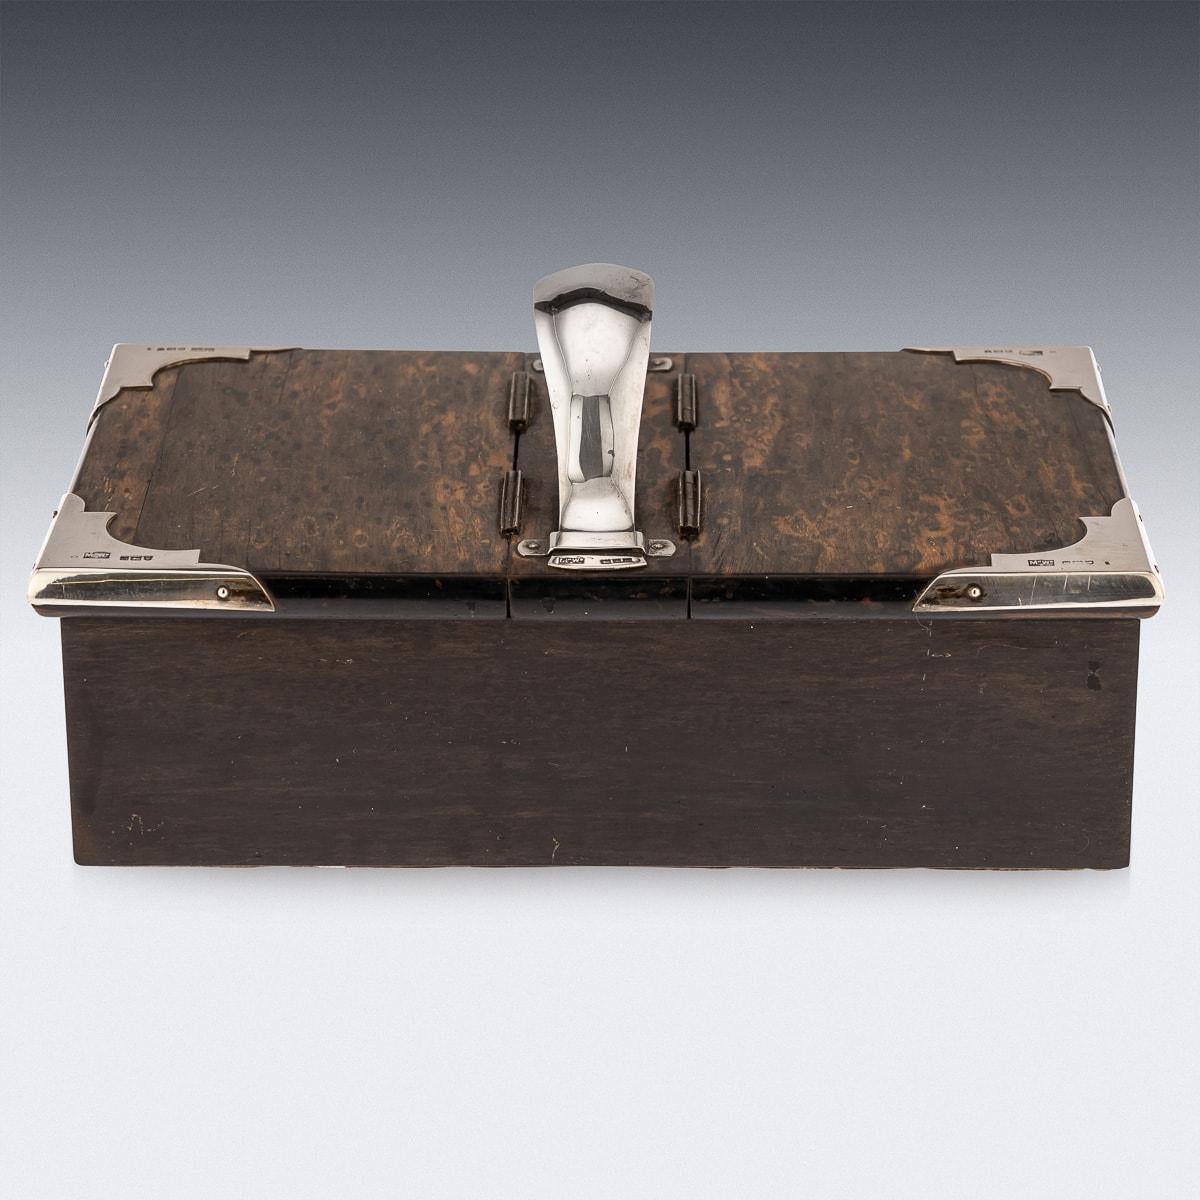 Ancienne boîte à fumer édouardienne du début du 20e siècle en bois de coromandel avec des montures en argent massif. Cette superbe boîte est fabriquée en bois de calamandre ou de coromandel, un bois très prisé originaire d'Inde et du Sri Lanka. Déjà